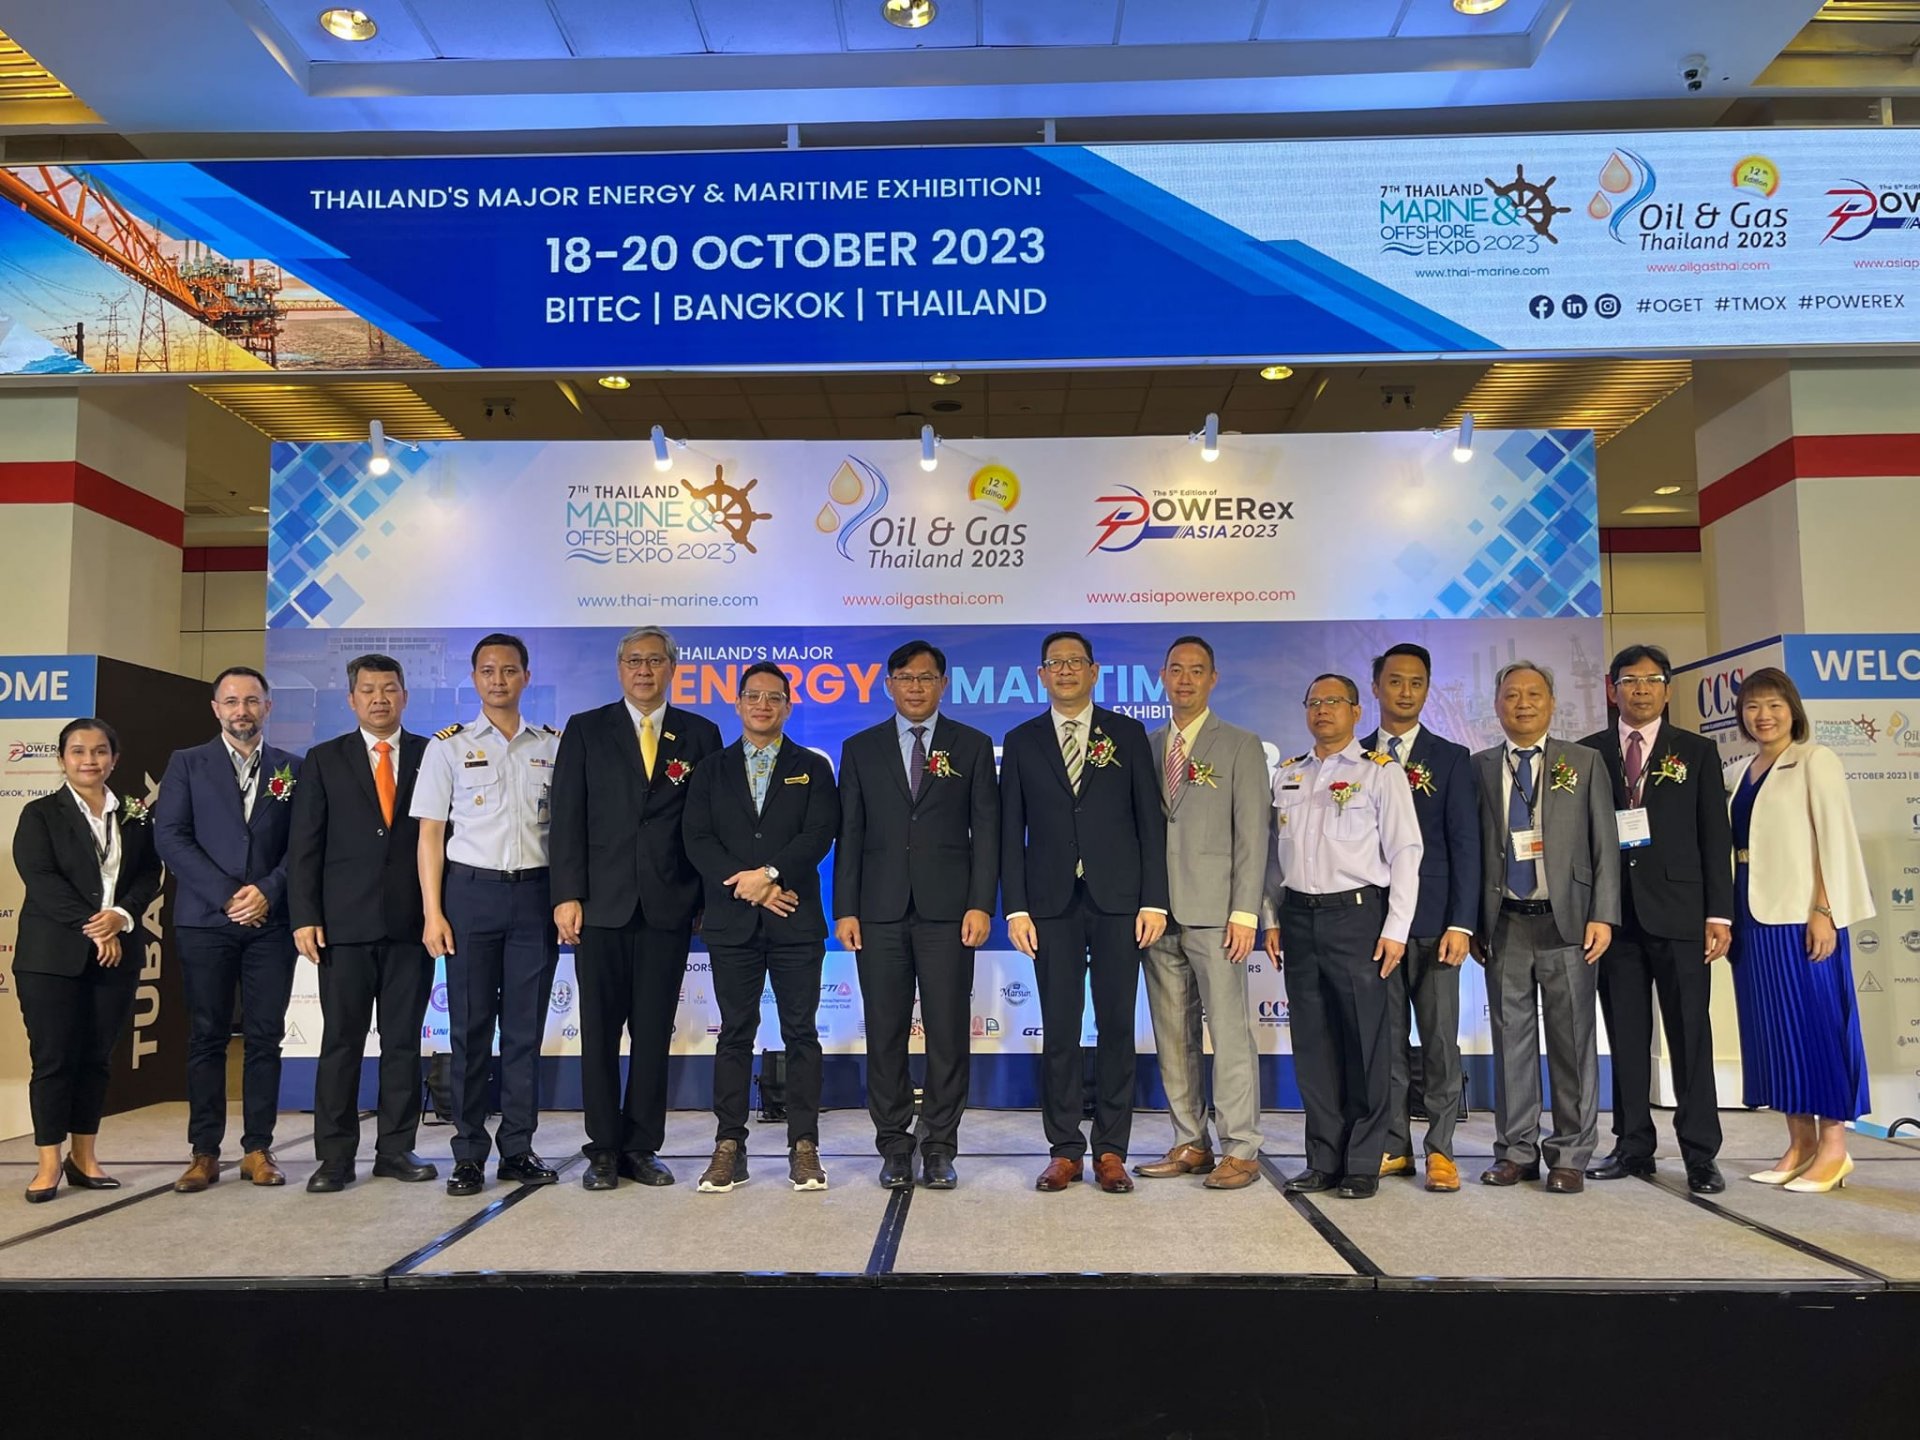 กลุ่มบริษัทยูนิไทย และซียูอีแอล ร่วมออกบูธและจัดแสดงนวัตกรรม ในงาน  Thailand Marine & Offshore Expo (TMOX) 2023 ไบเทค บางนา